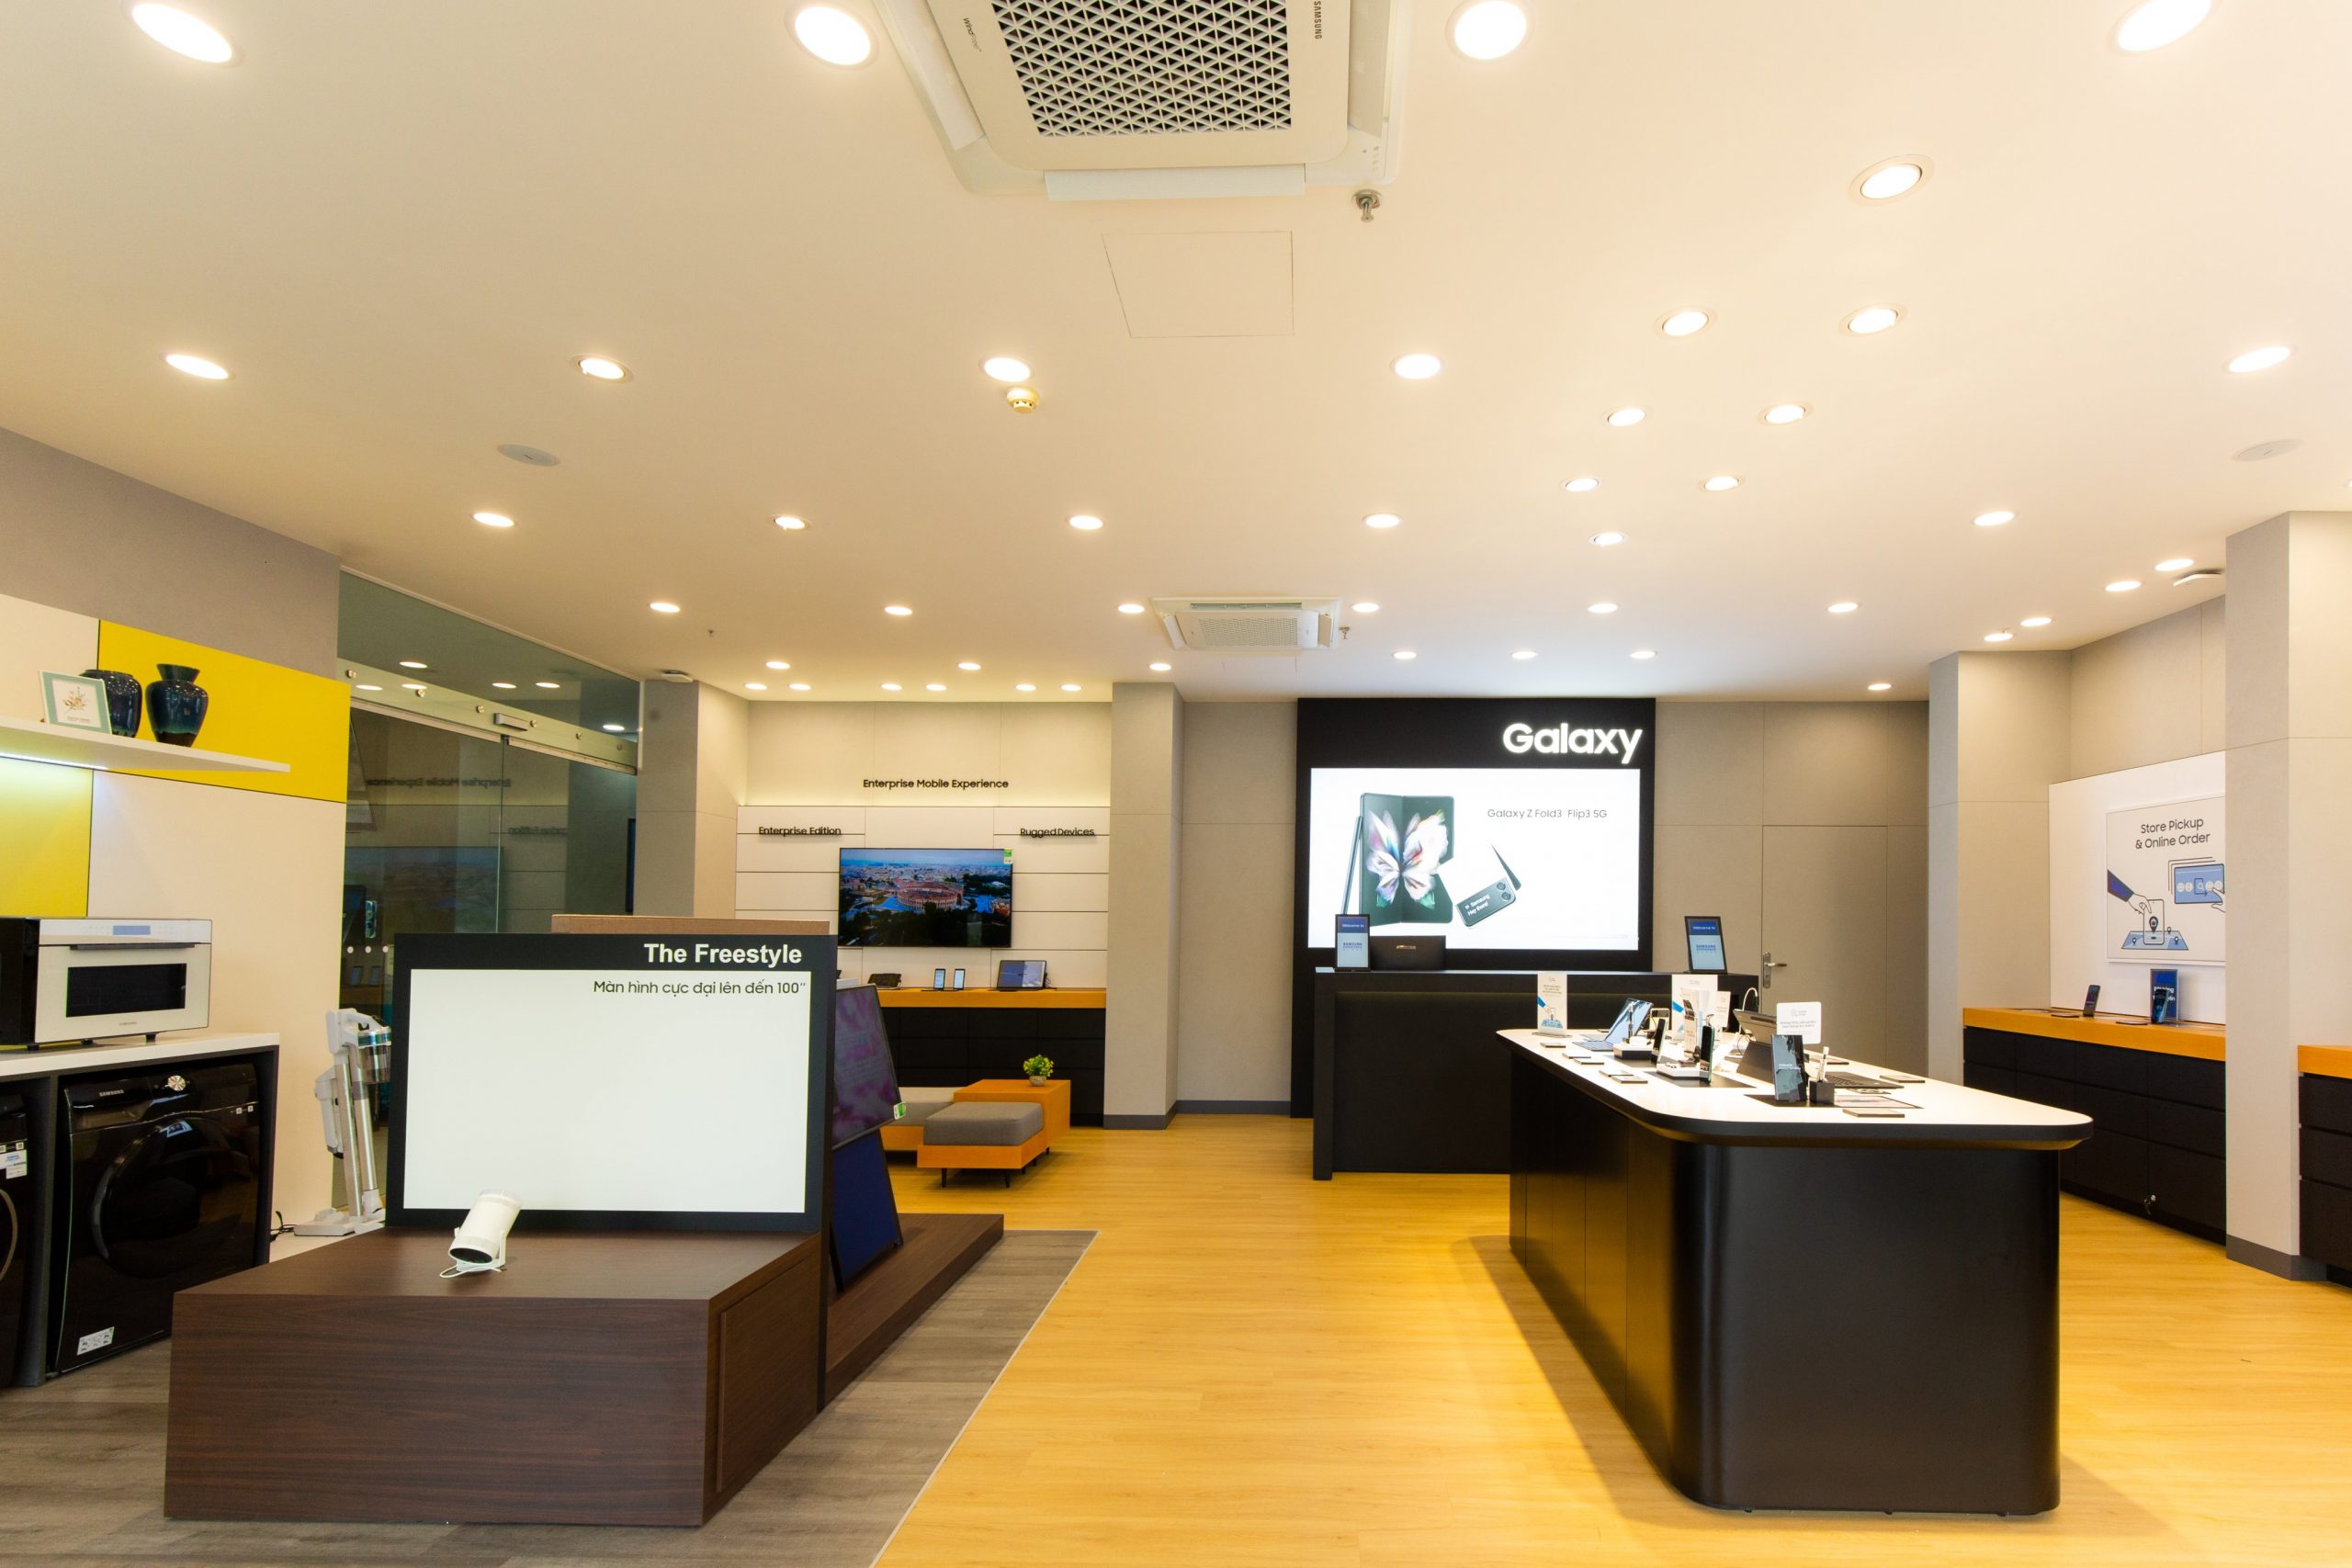 Samsung khai trương cửa hàng ủy quyền cao cấp đầu tiên tại Đà Nẵng và miền Trung